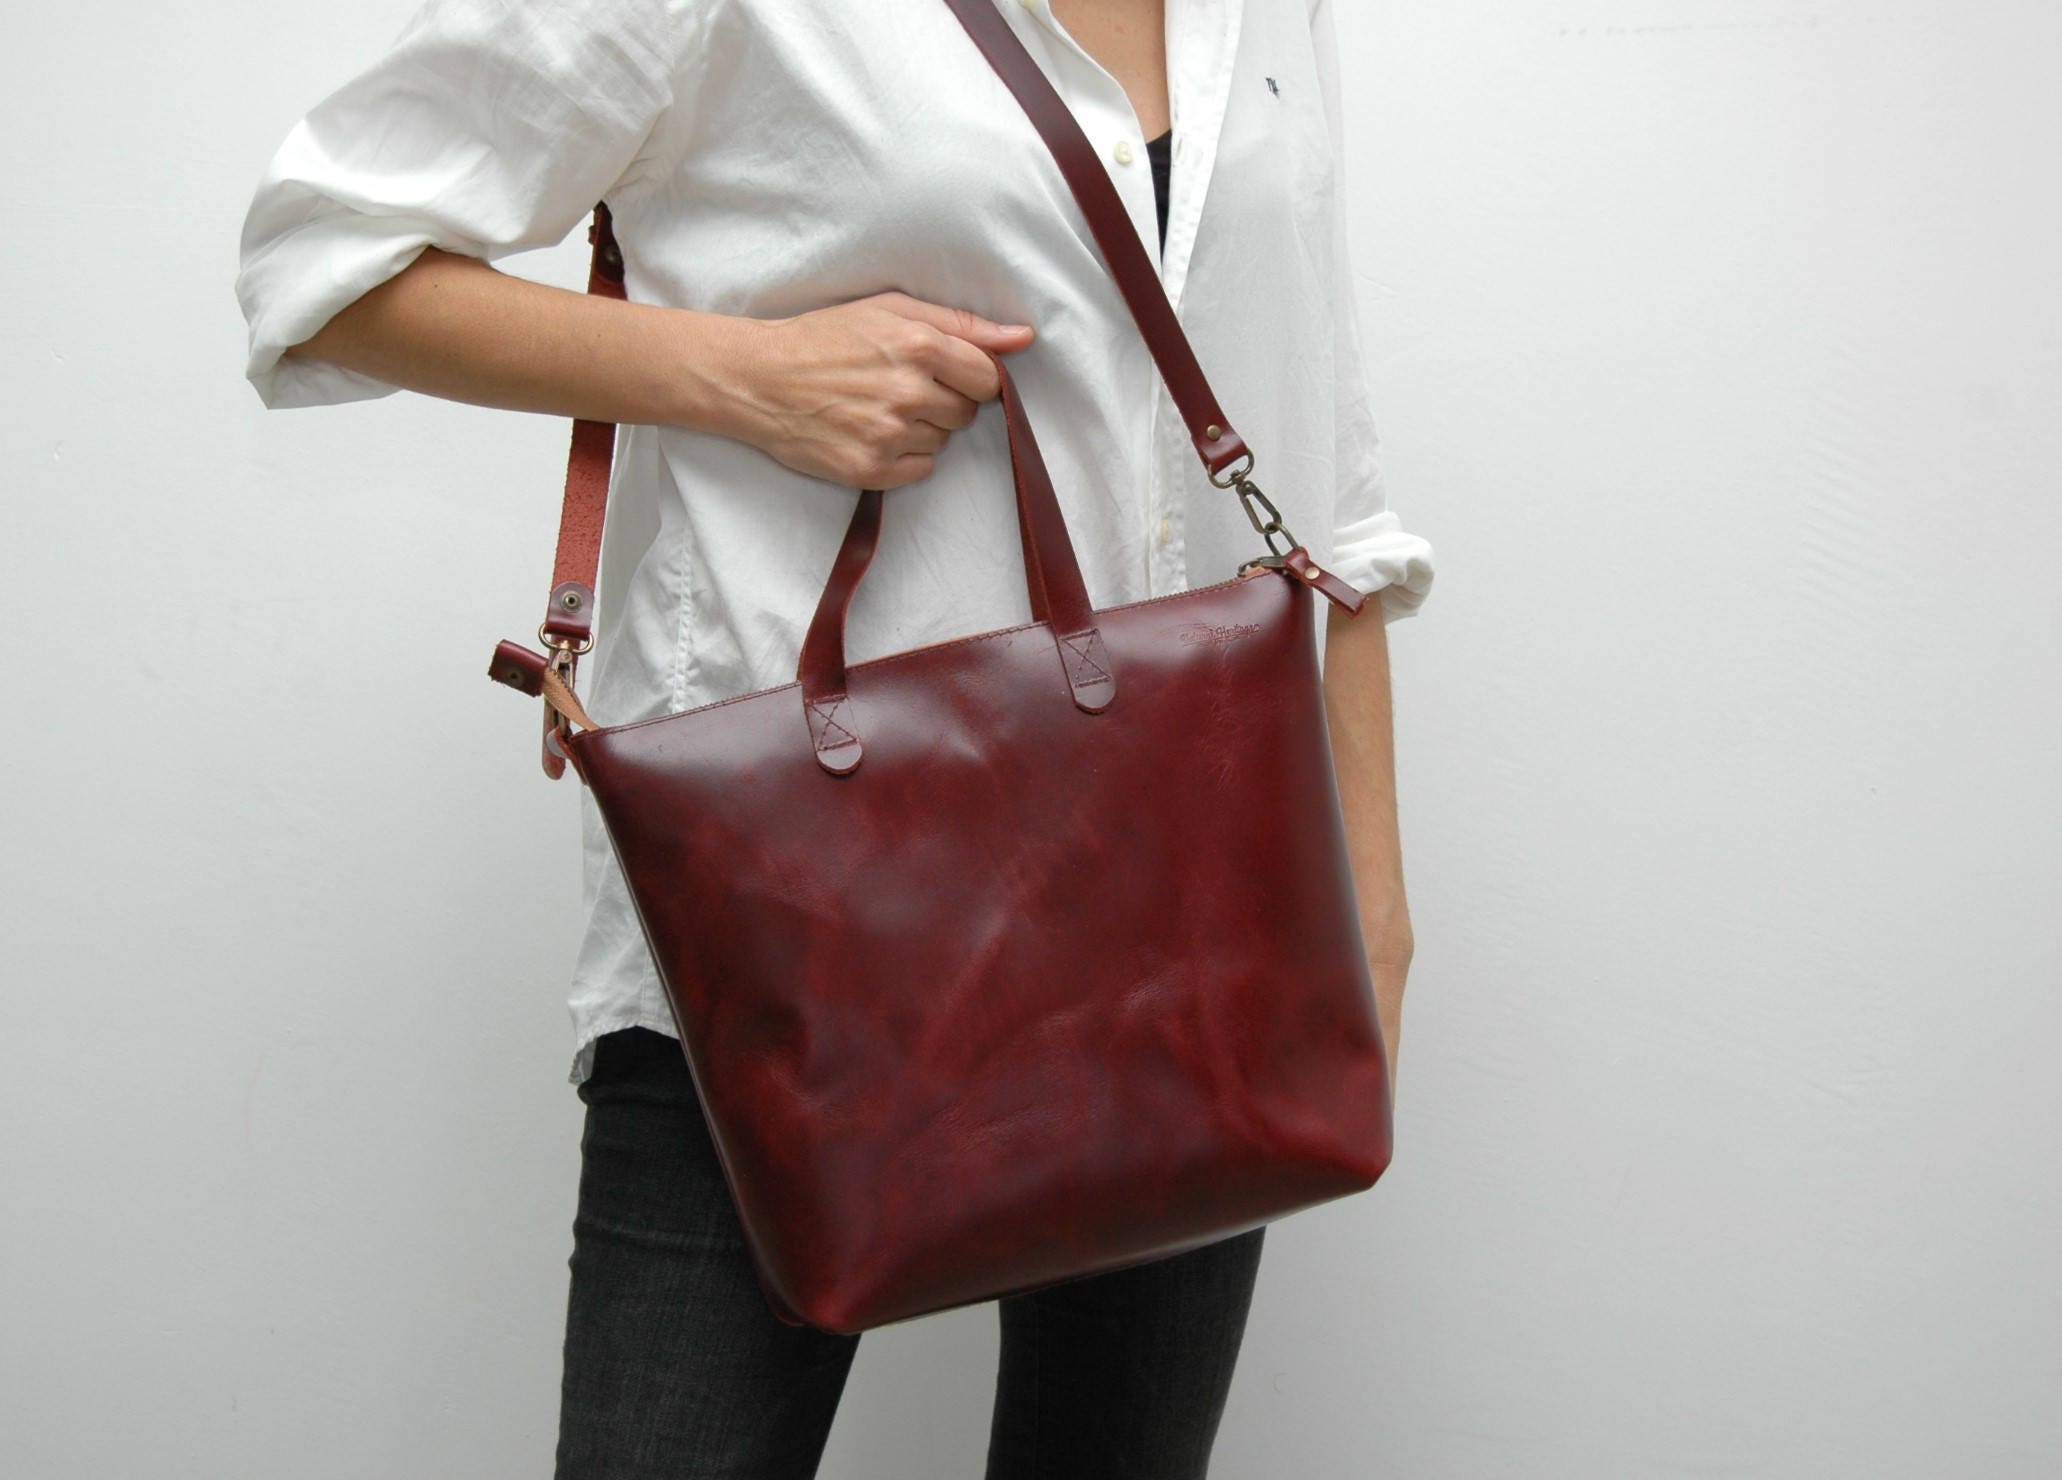 Leather tote bag medium size dark cabernet colorzip closure | Etsy